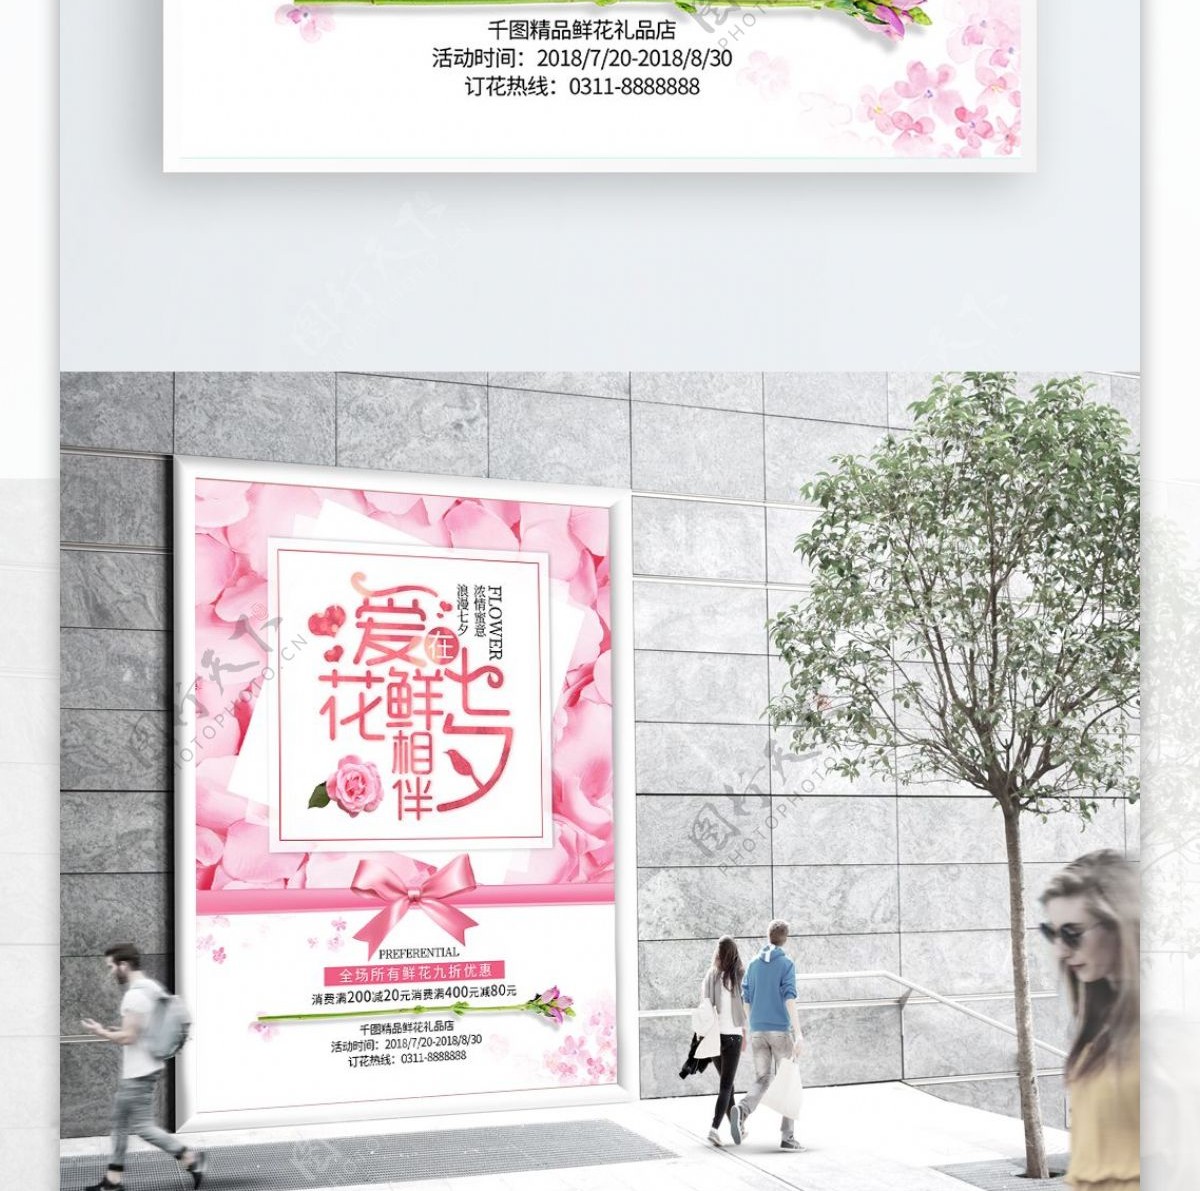 七夕鲜花促销海报